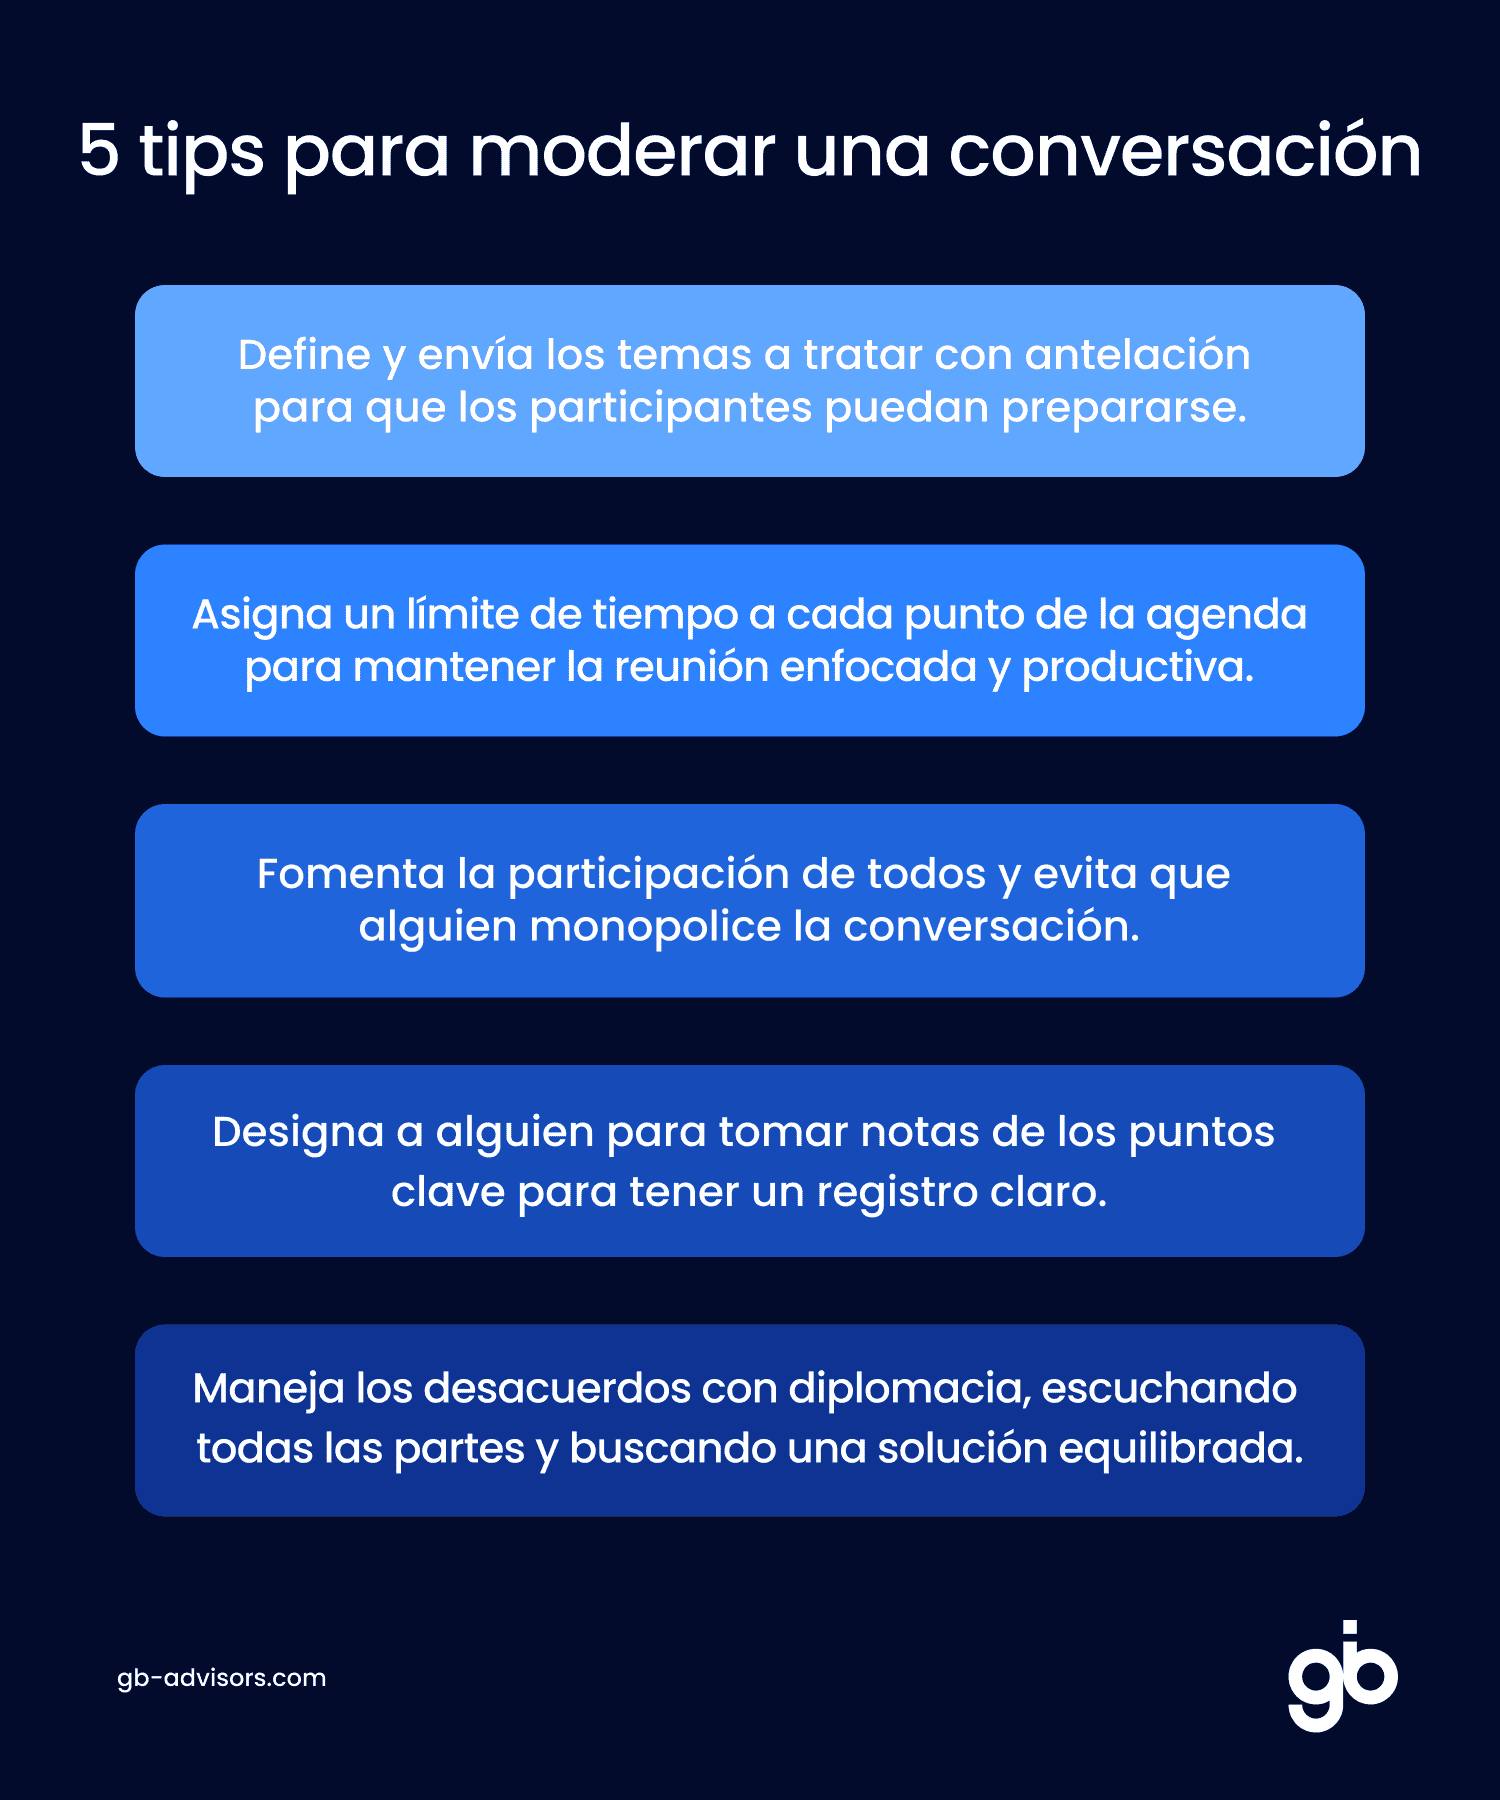 5 tips para moderar una conversación